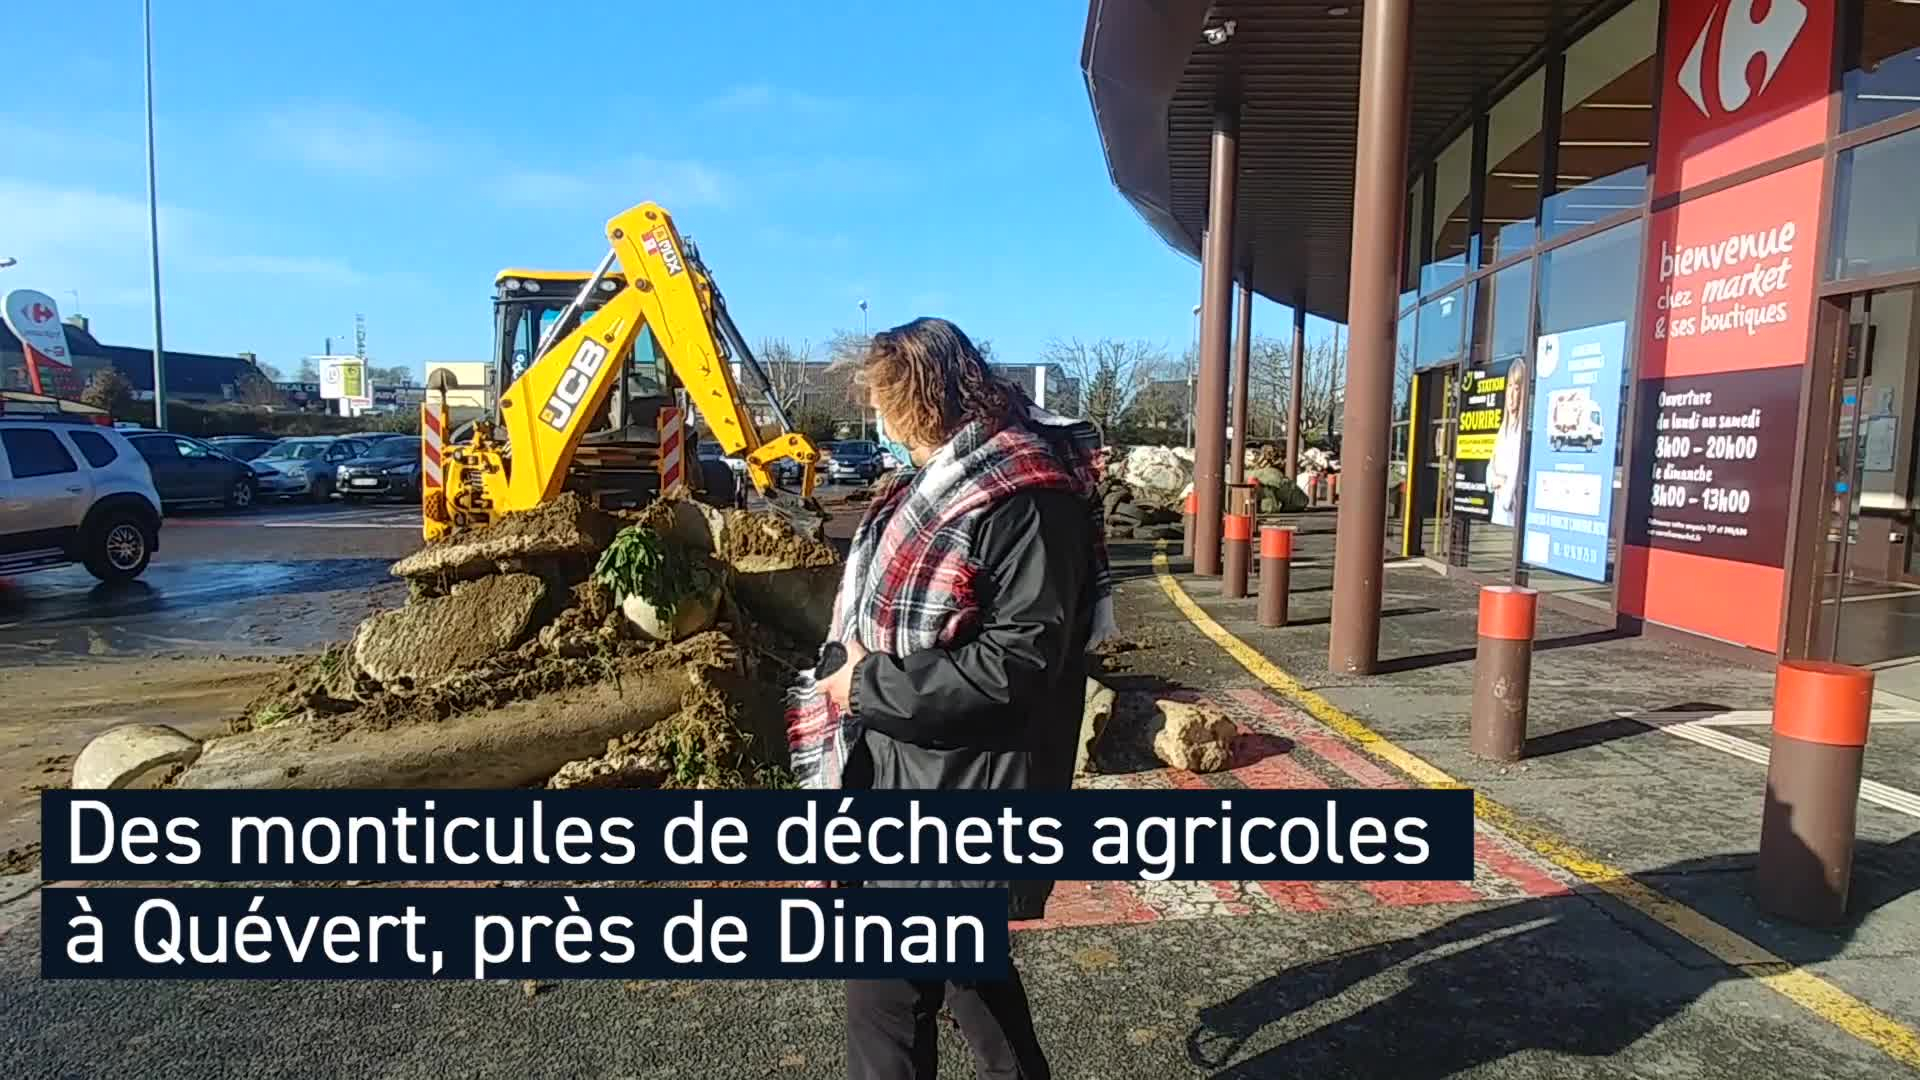 Des monticules de déchets agricoles devant Carrefour et McDo, à Quévert, près de Dinan (Le Télégramme)